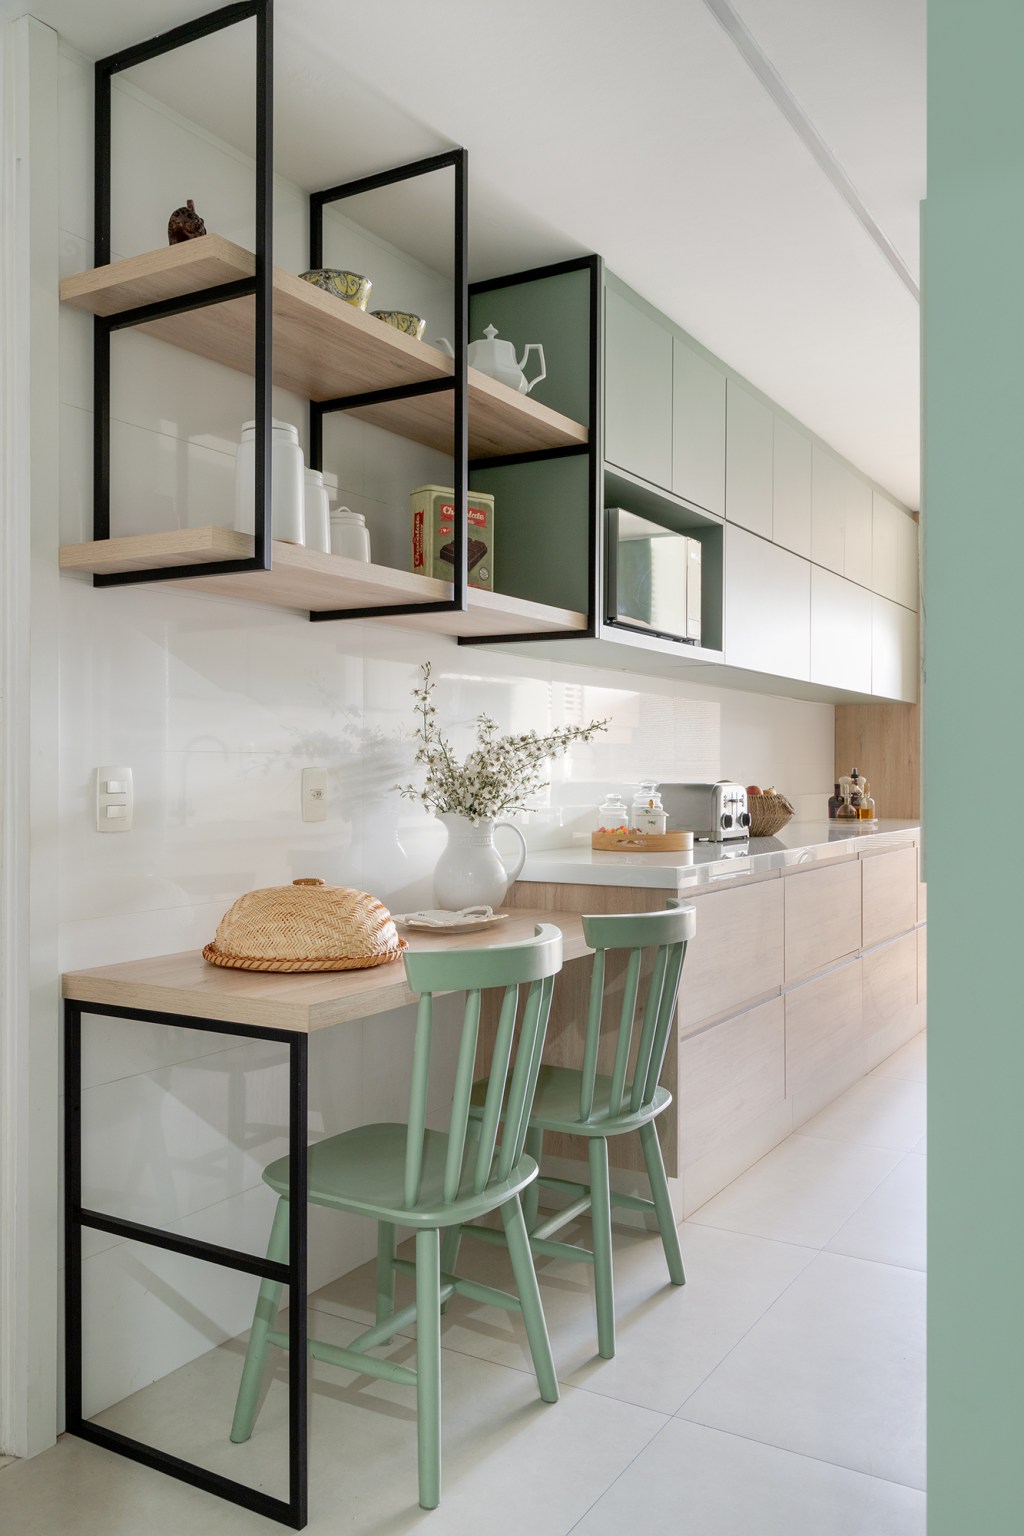 Sem quebra-quebra, apê de 150 m² aposta em tons suaves e cozinha verde. Projeto de Ana Cano. Na foto, cozinha corredor com marcenaria verde.